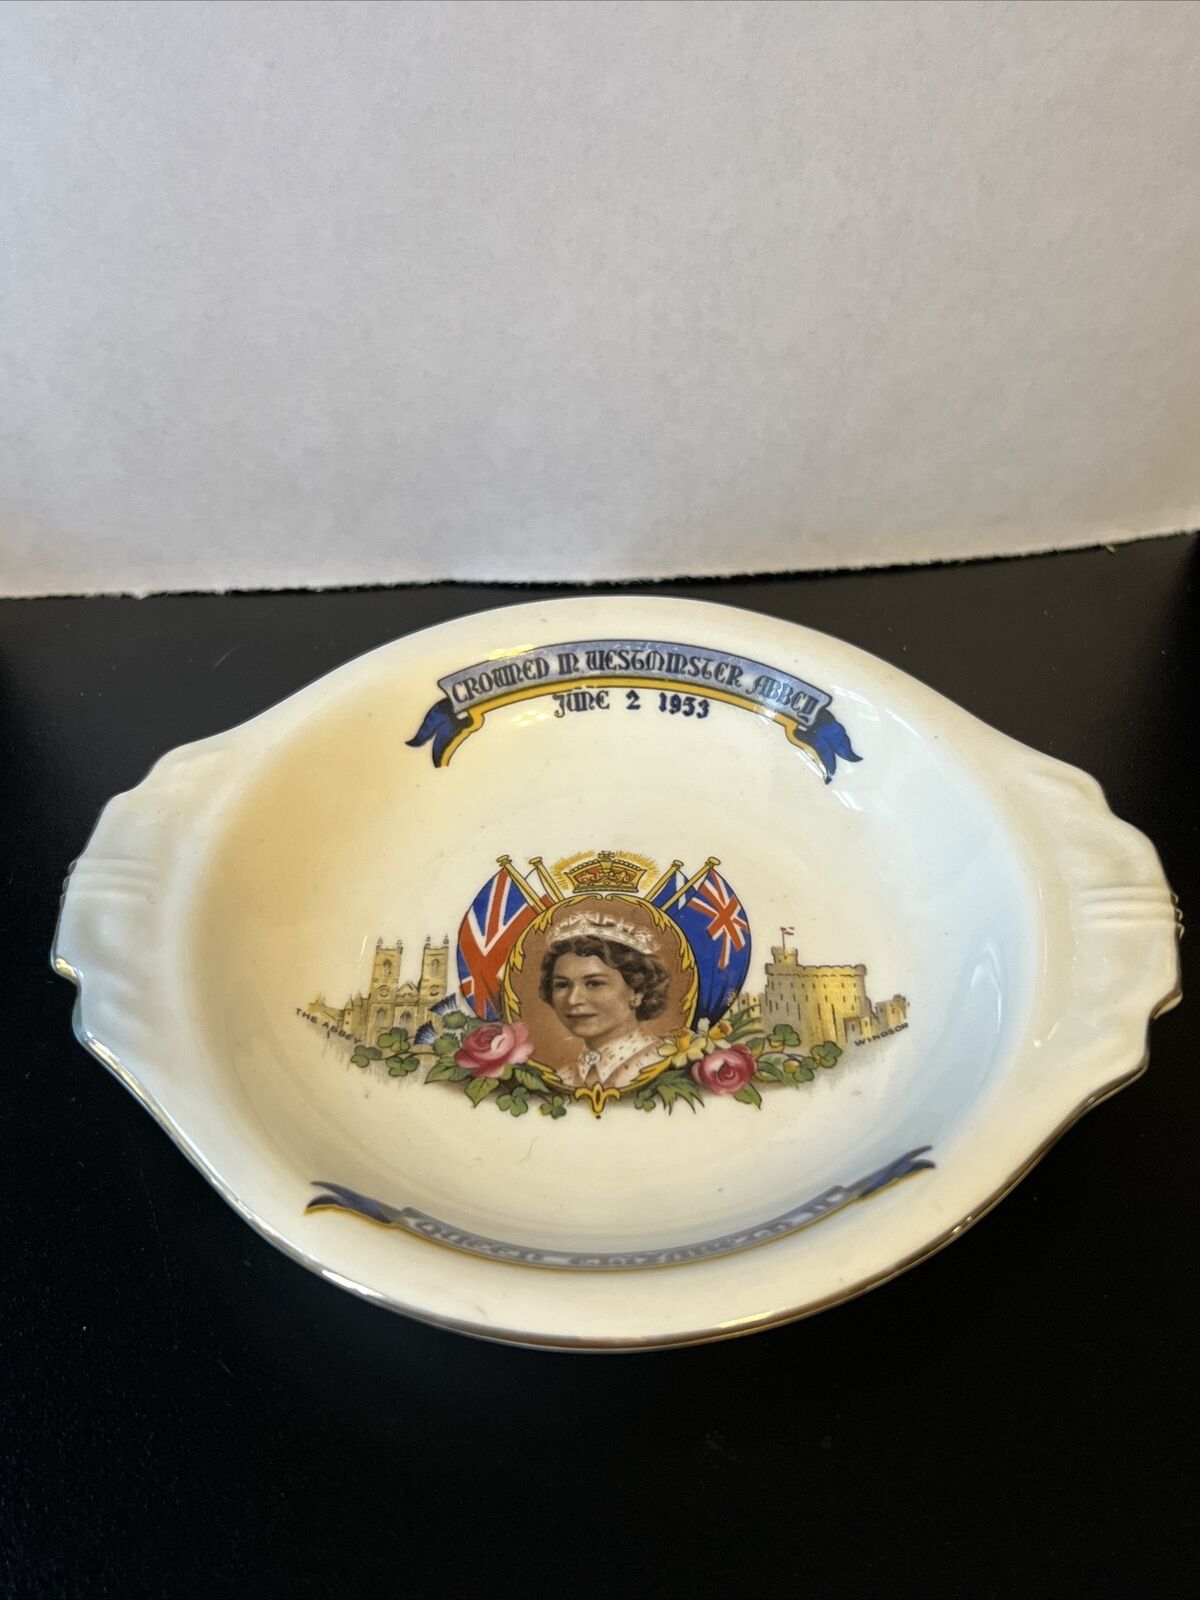 Queen Elizabeth Coronation Dish Circa June 2 1953, Aynsley Rare British Monarchy